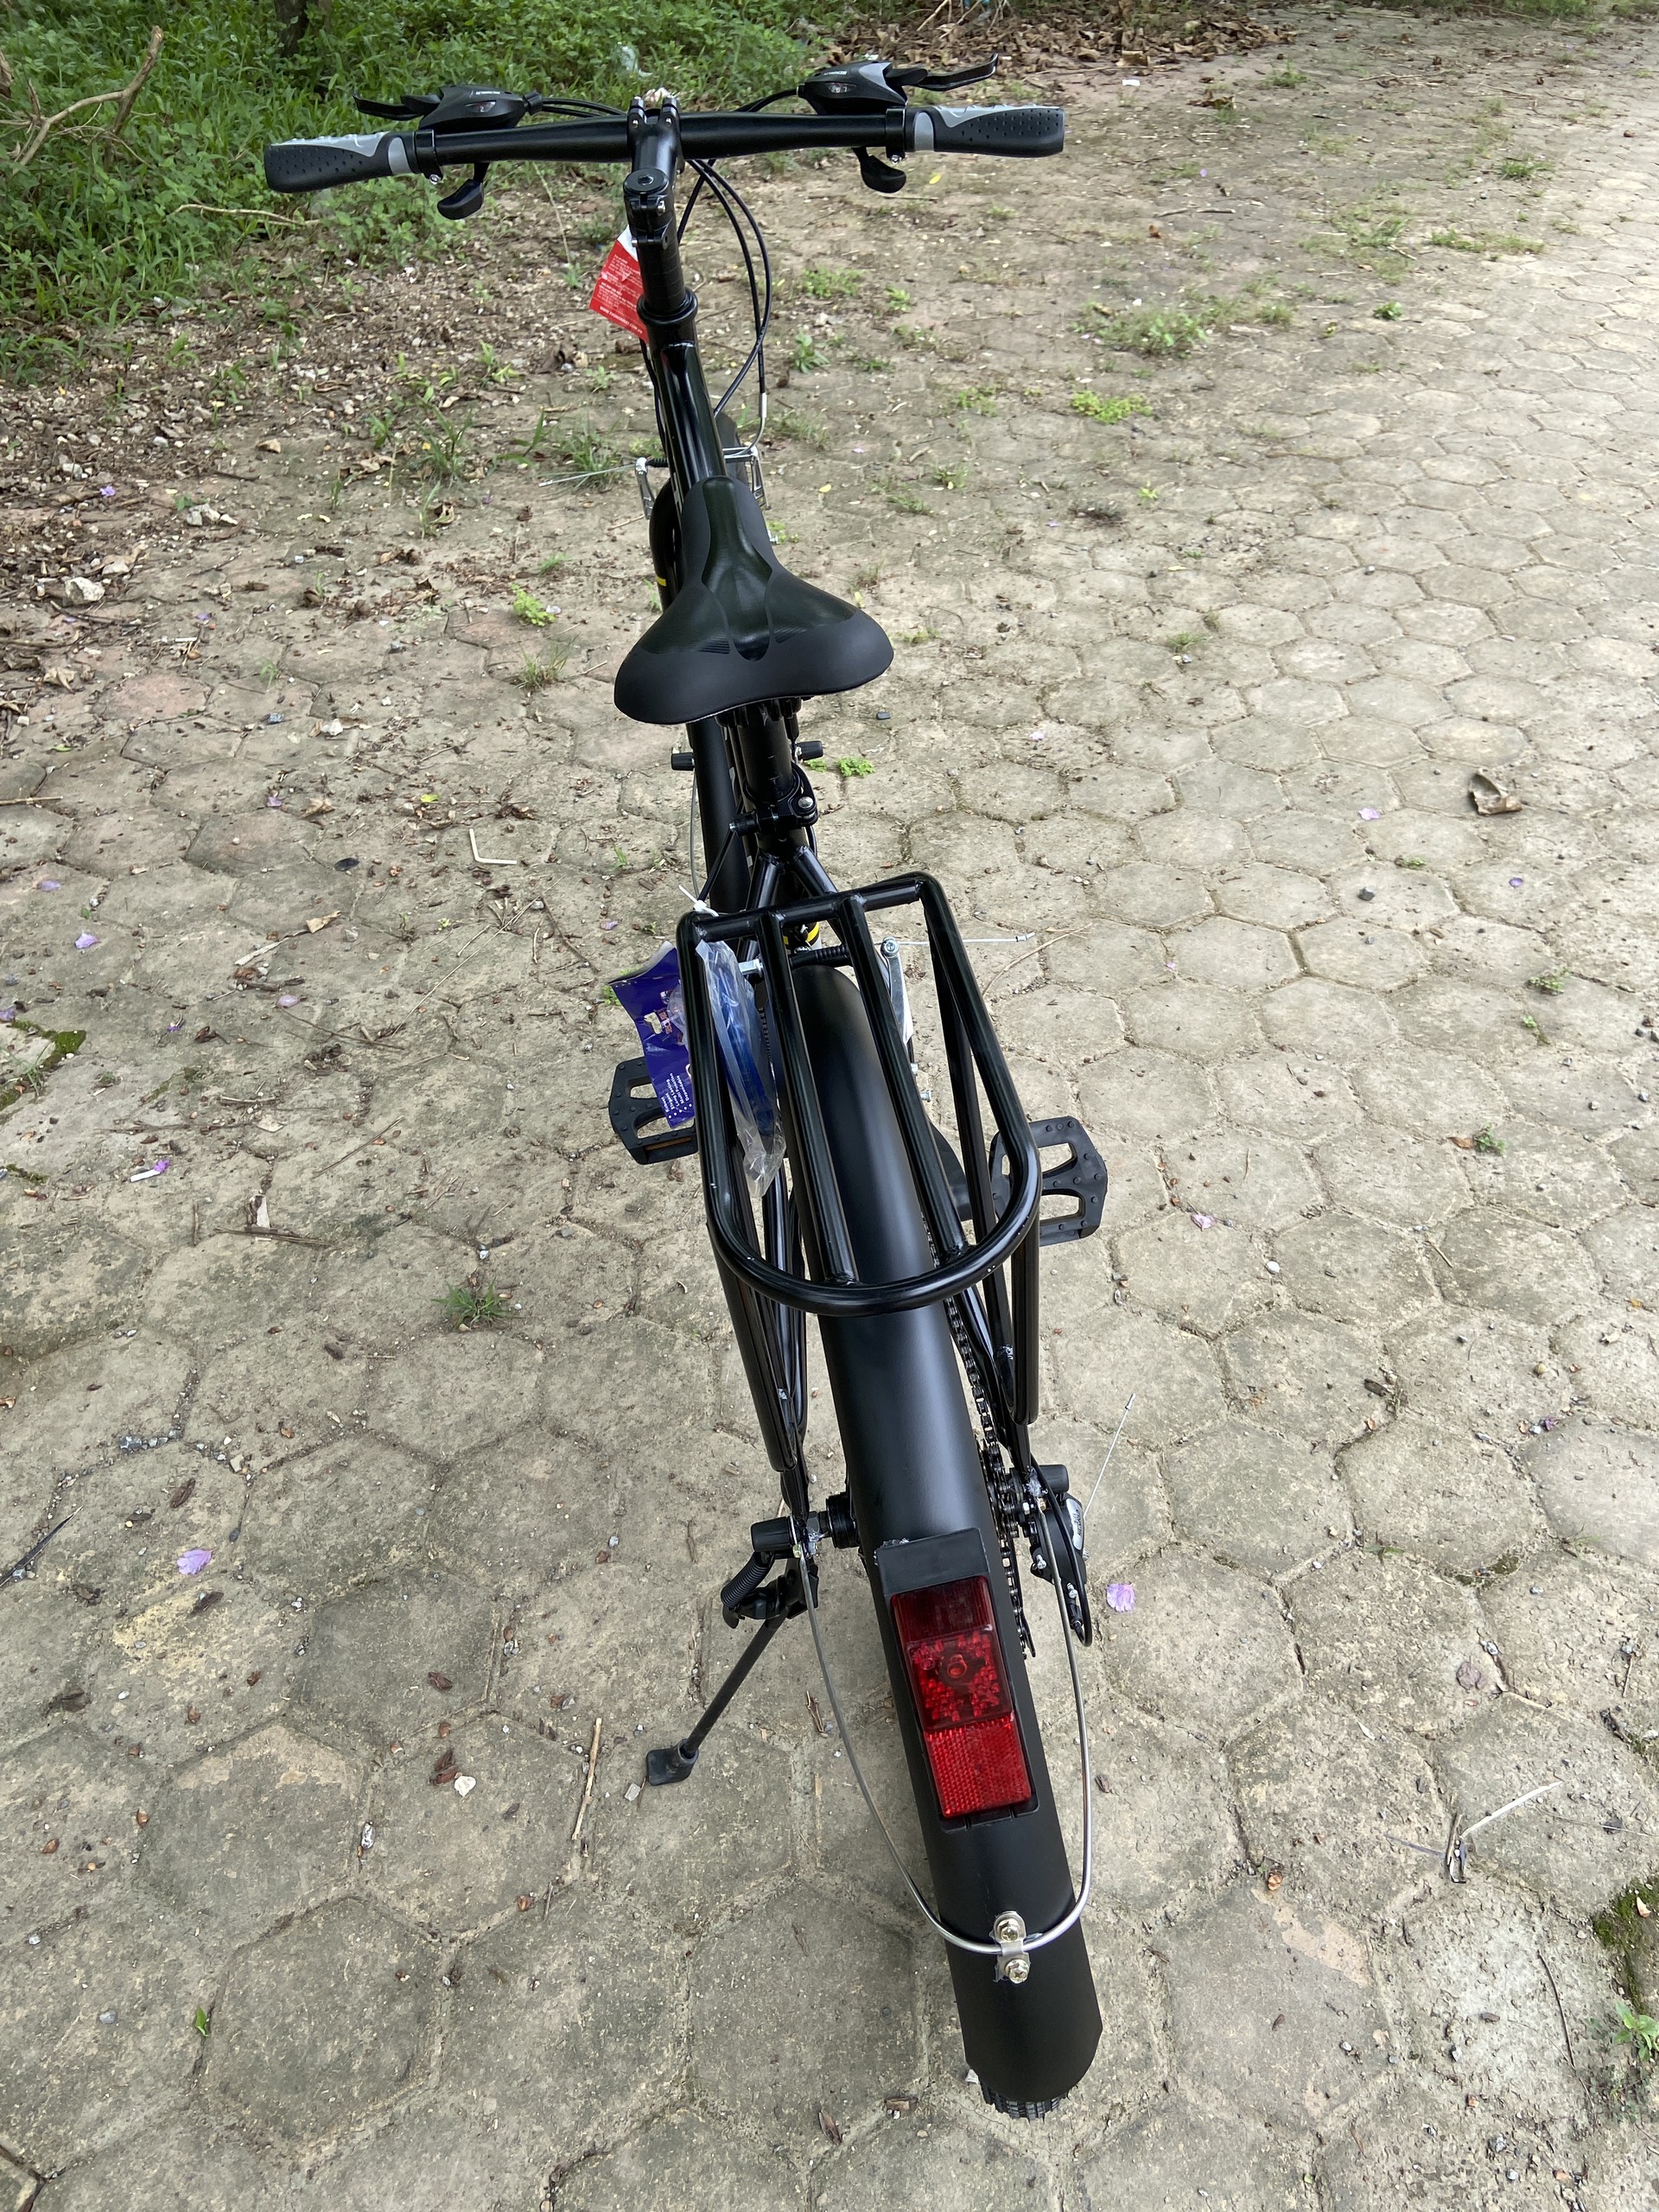 Xe đạp địa hình Thống Nhất MTB26-05 đen mờ - Hàng chính hãng